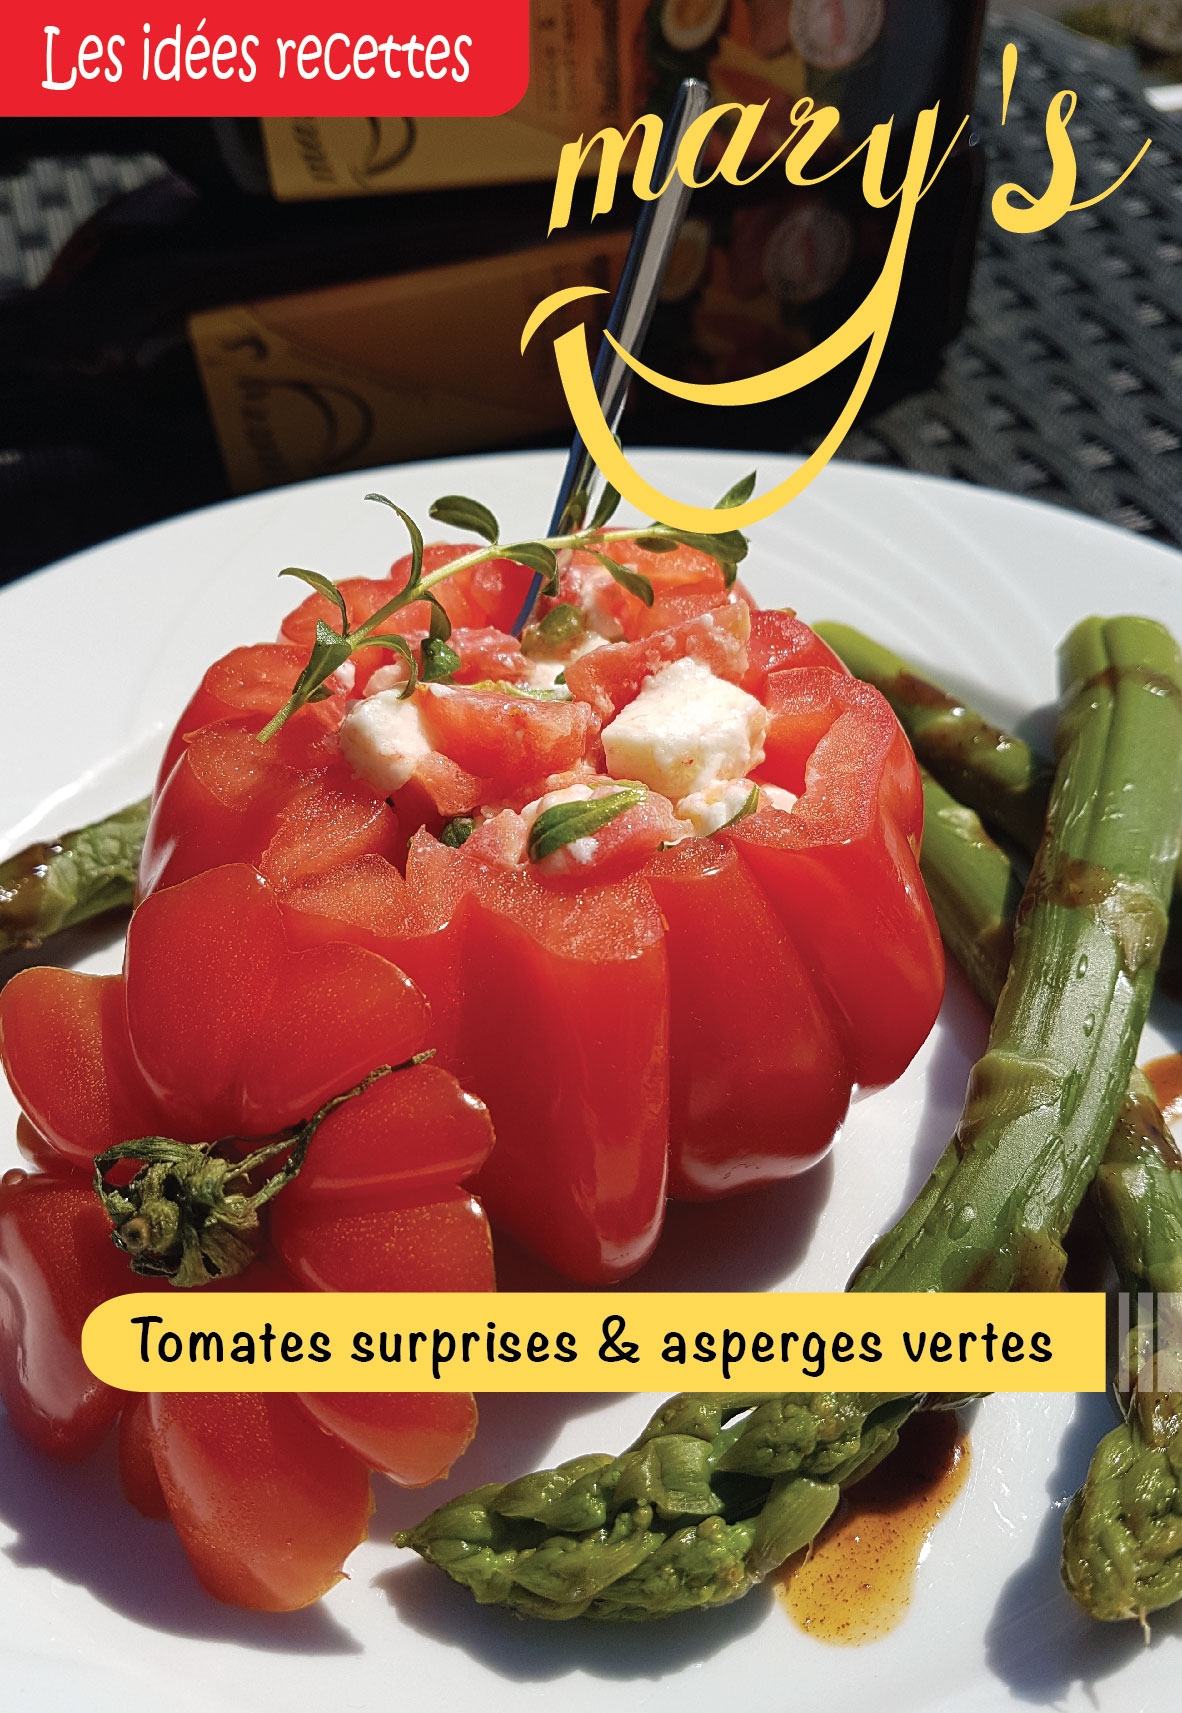 Tomates surprises & asperges vertes